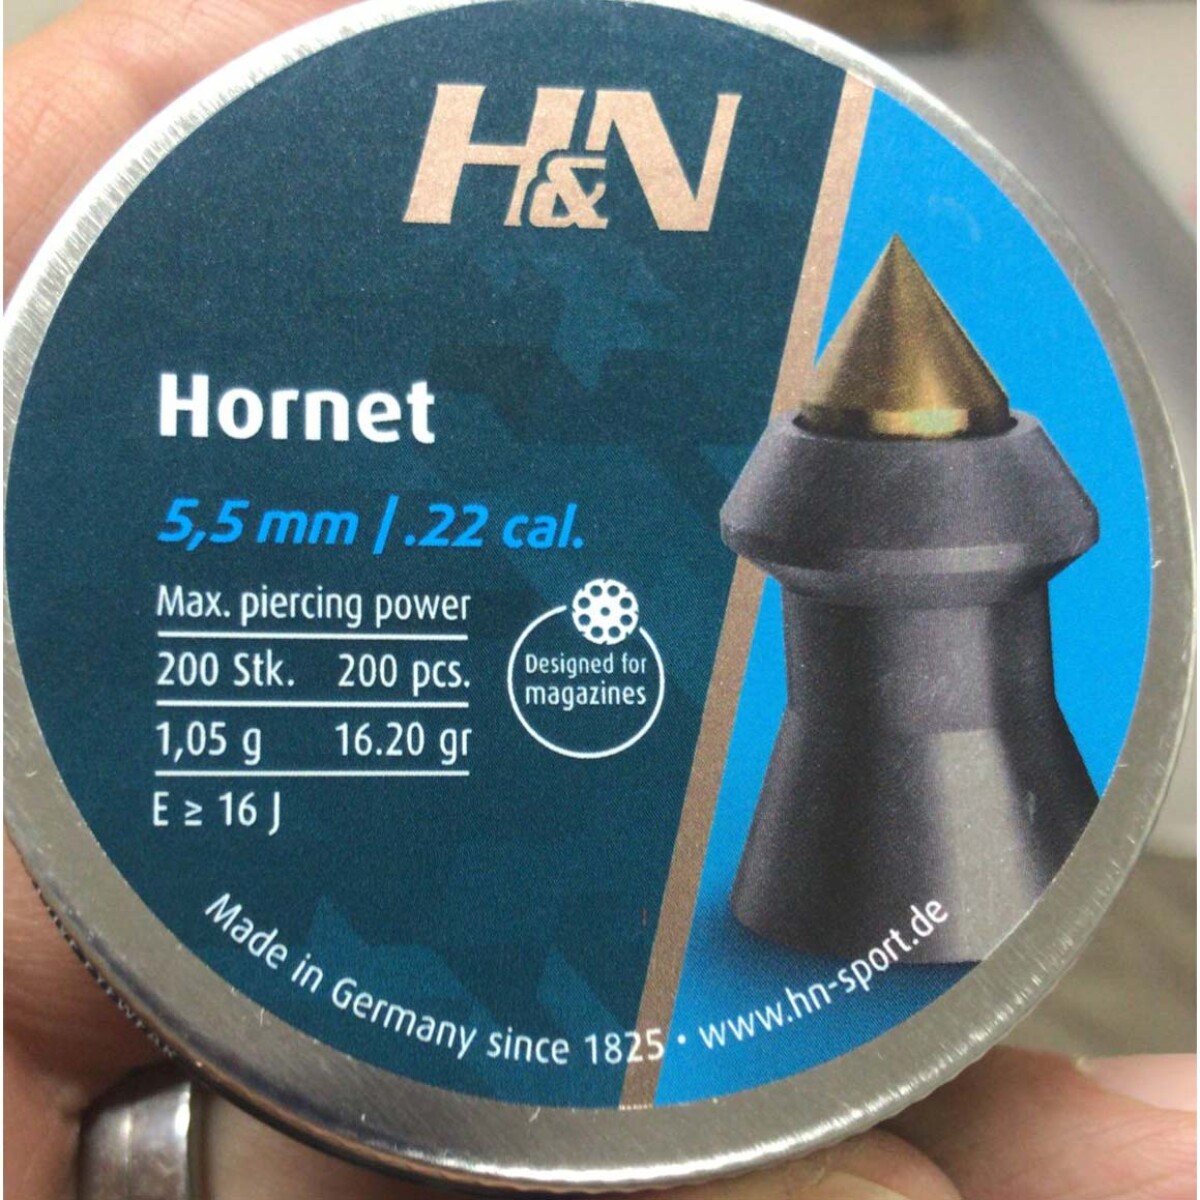 Balin Hyn Hornet Cal 5.5mm X 200 16.20grs 